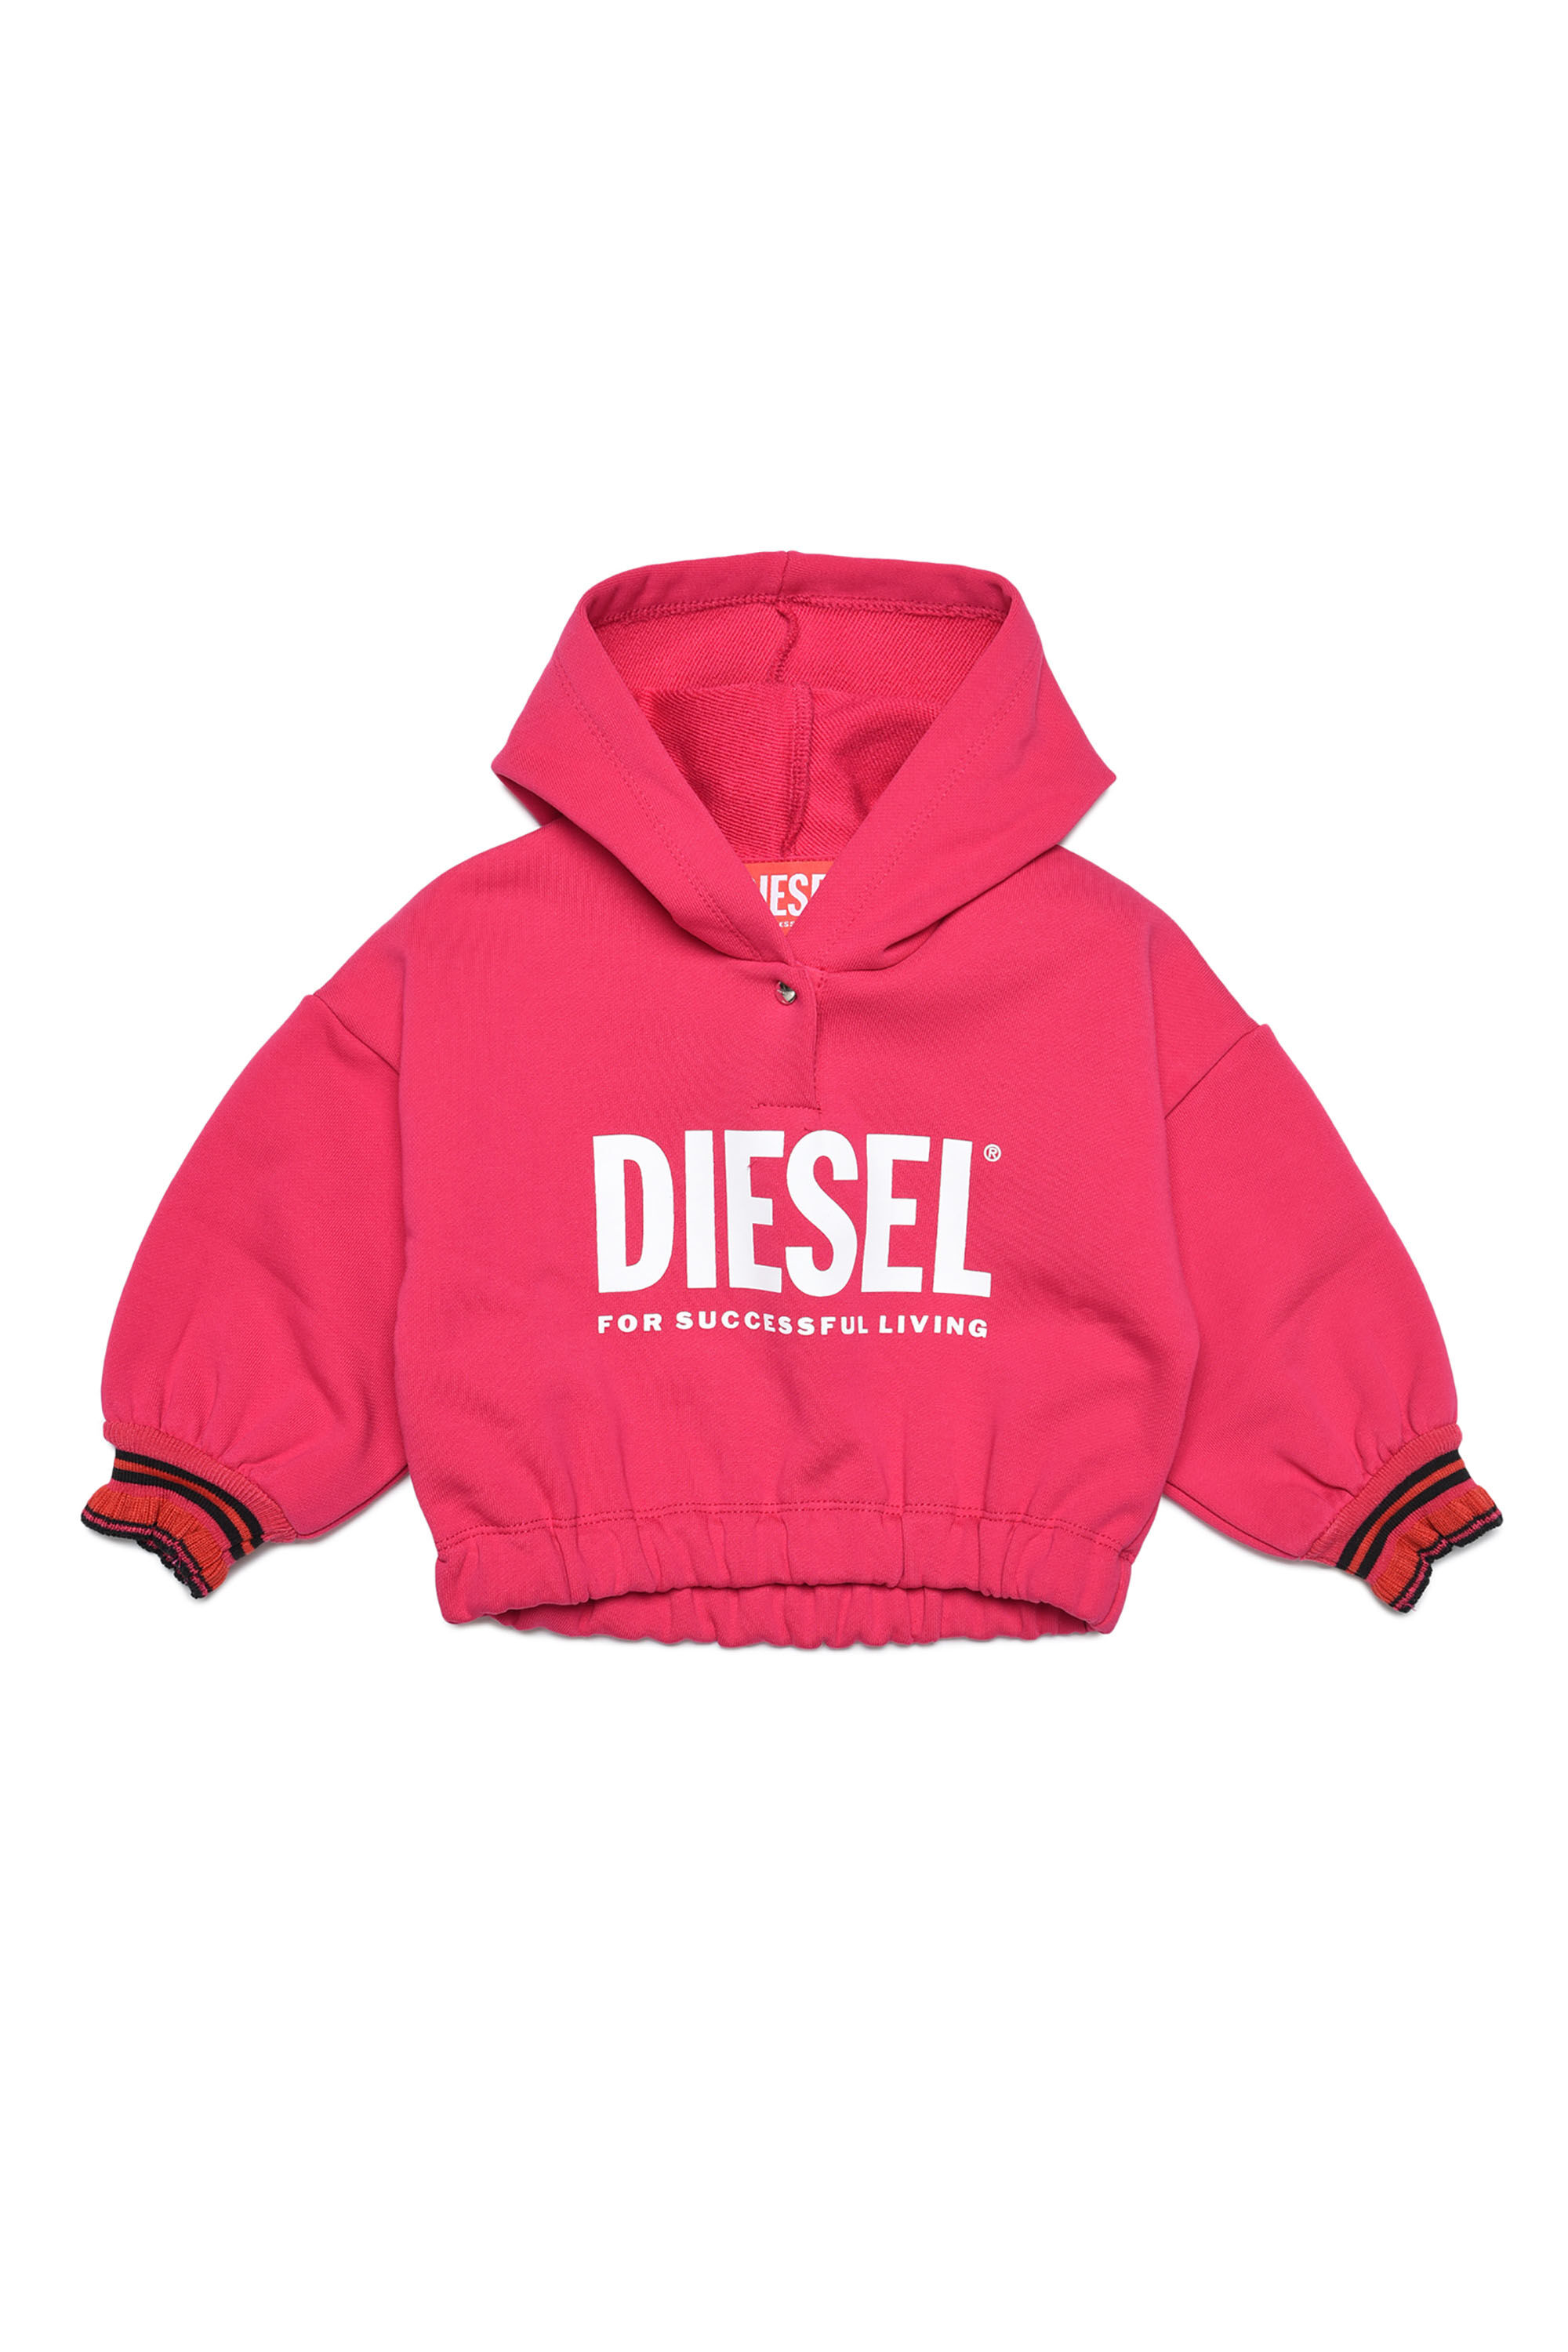 Diesel - SENTIALB, Pink - Image 1